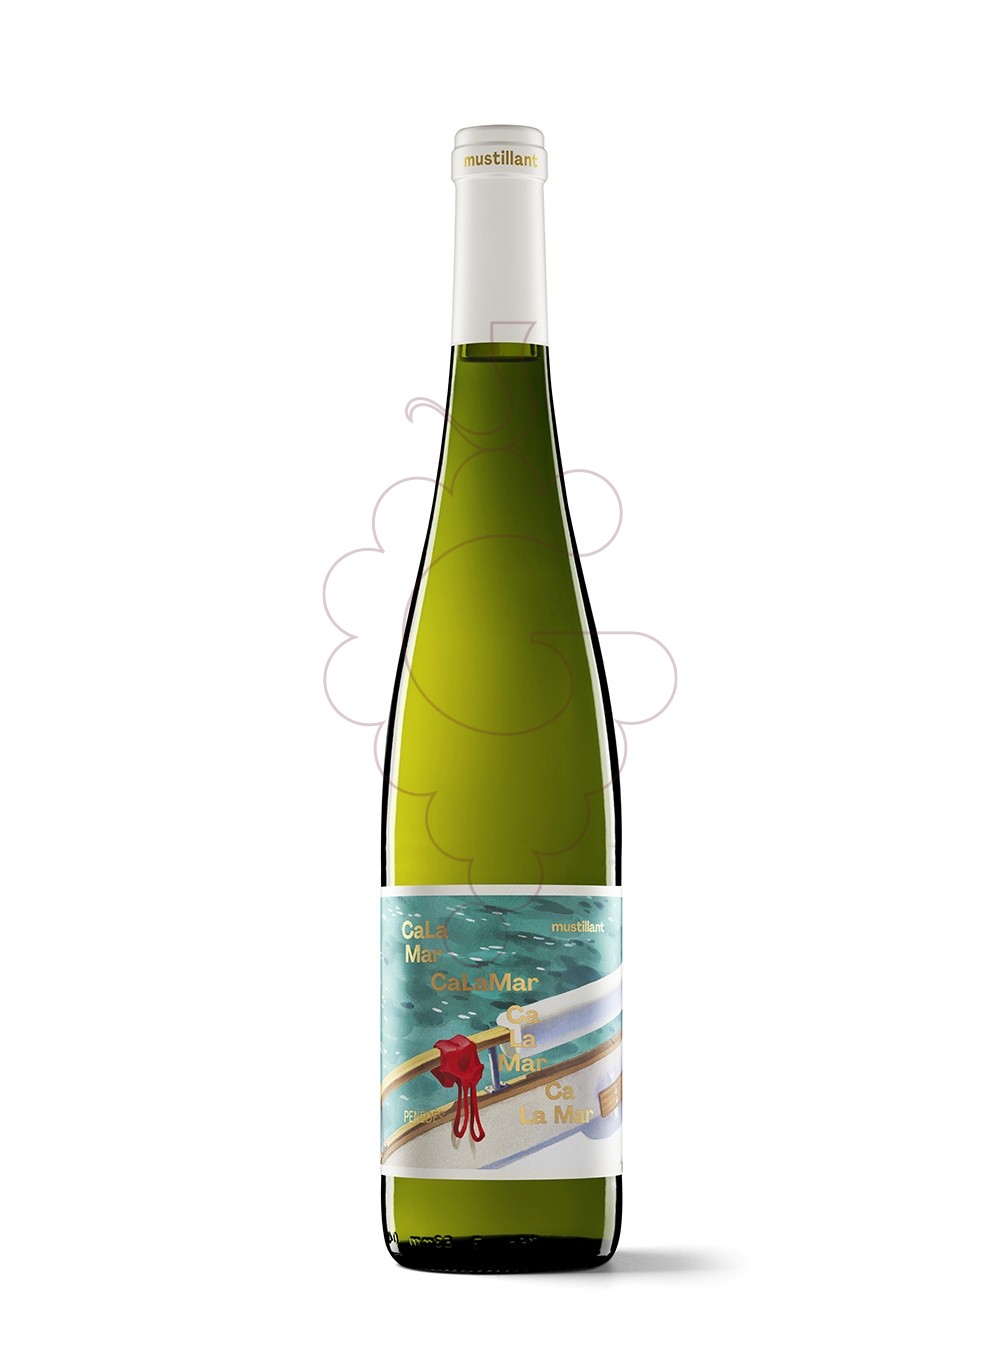 Foto Ca La Mar Mustillant Blanco vino espumoso